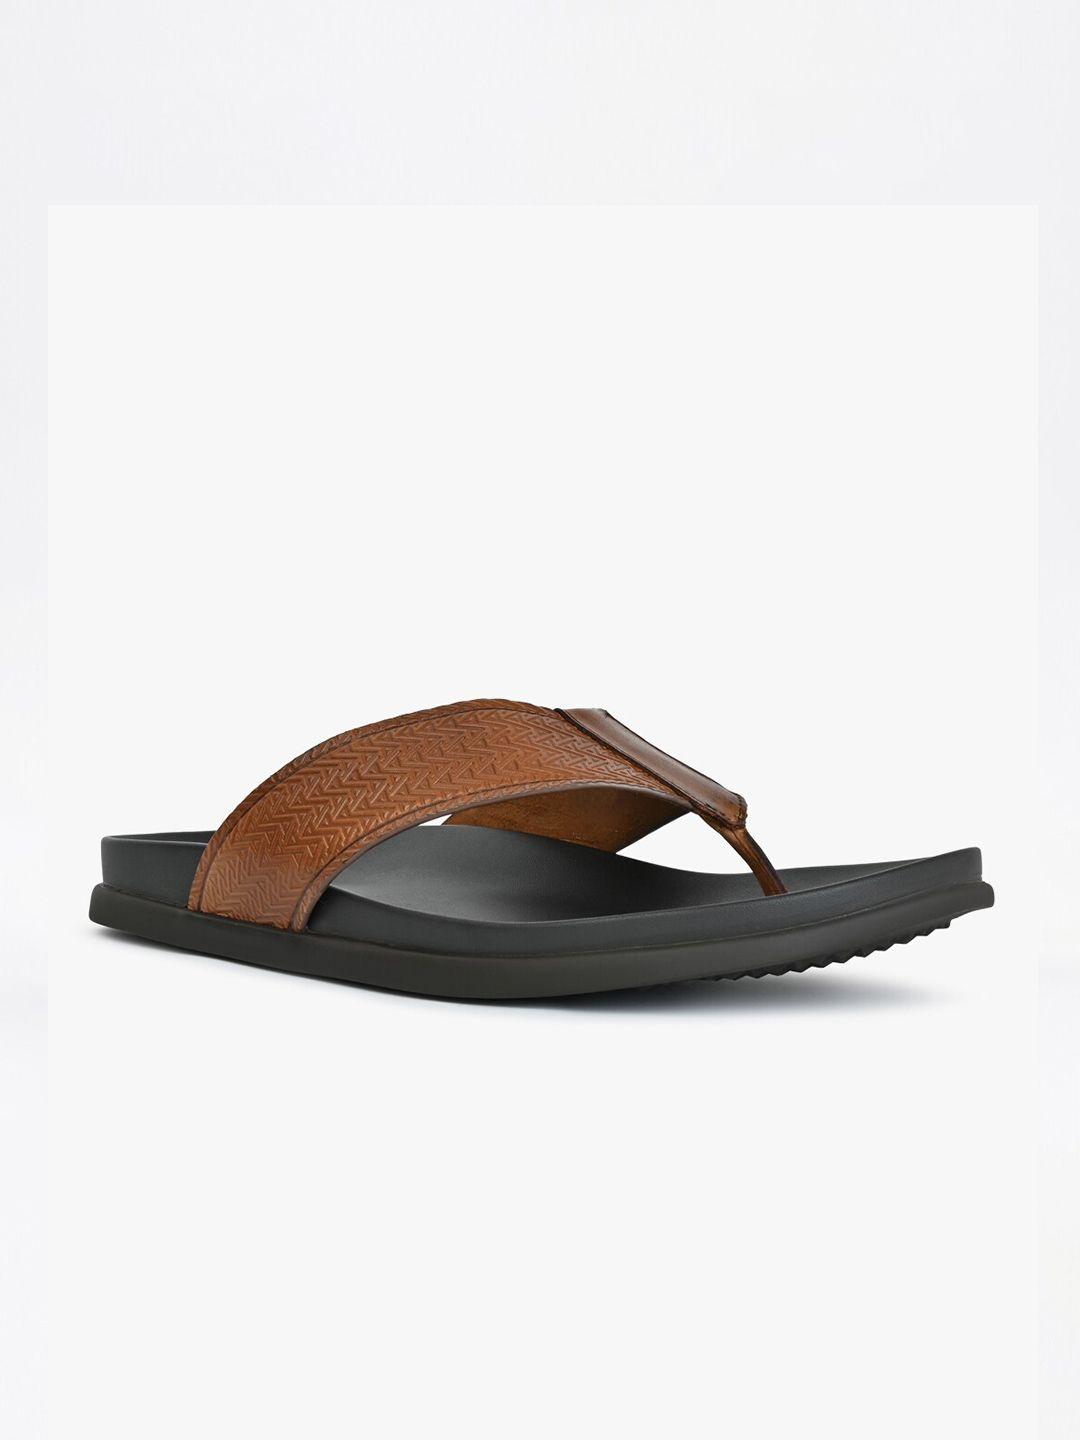 aldo men afuthien leather comfort sandals